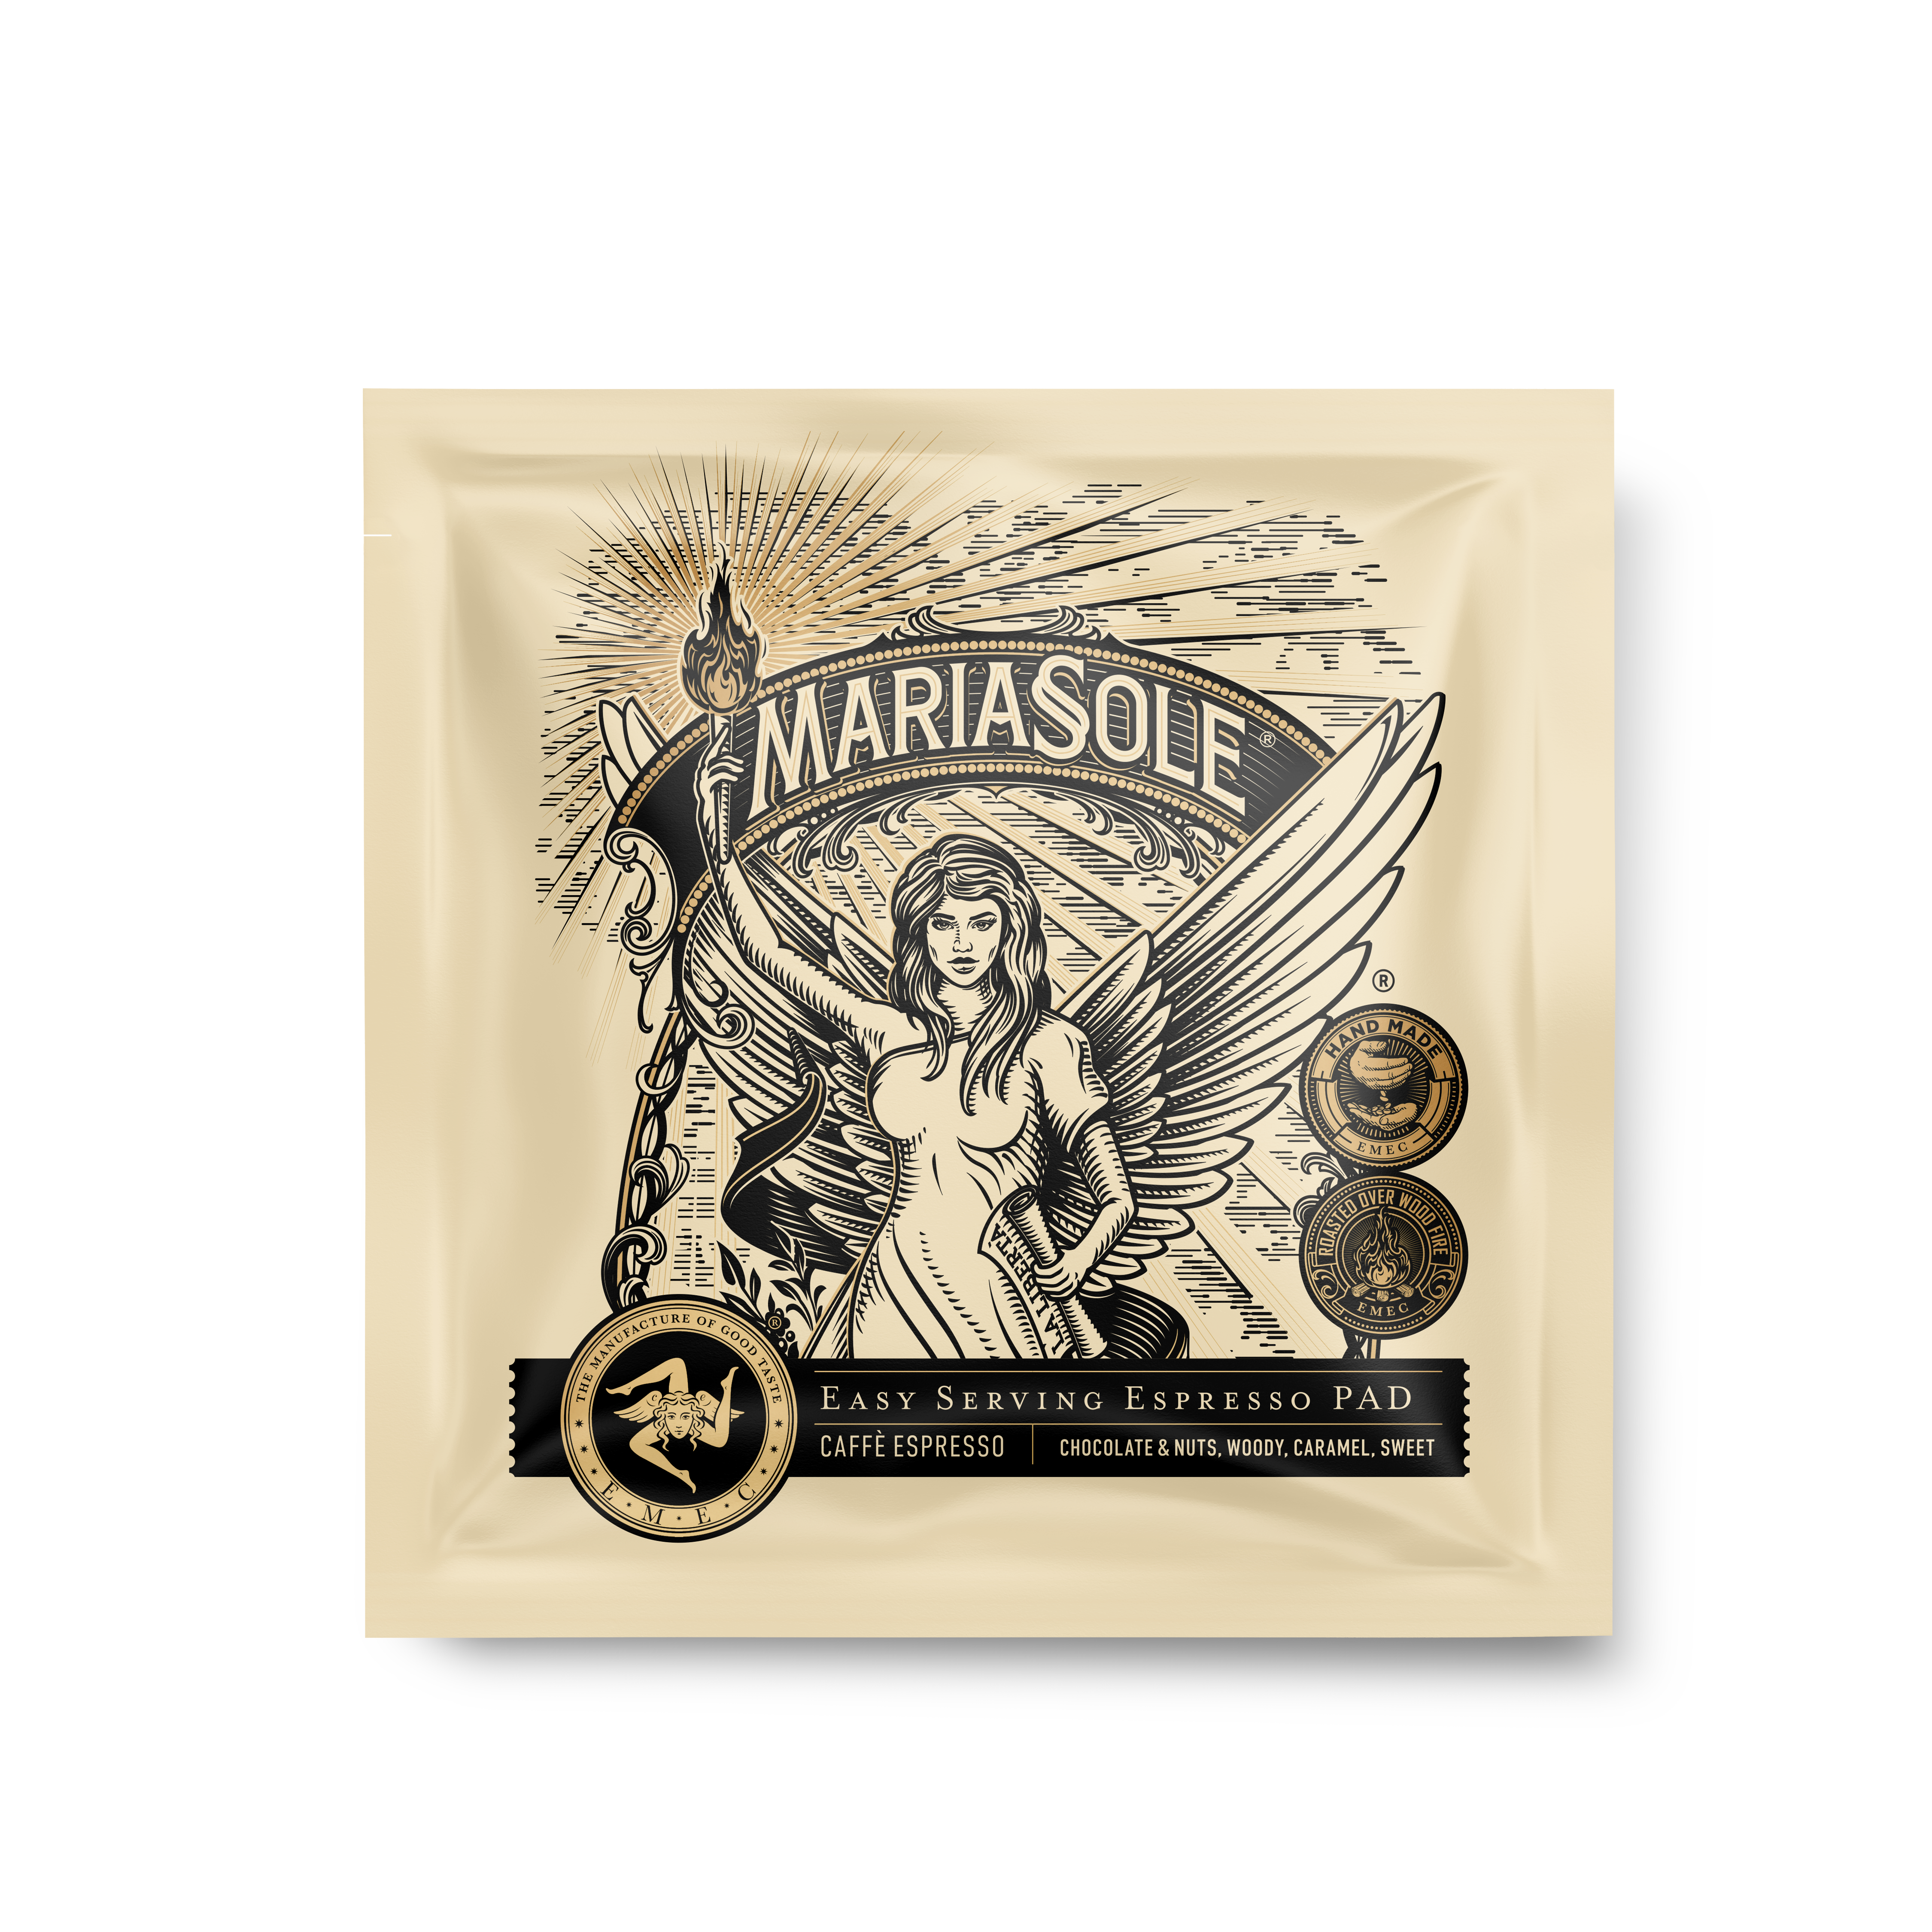 MARIASOLE- Caffè Espresso - E.S.E Pads